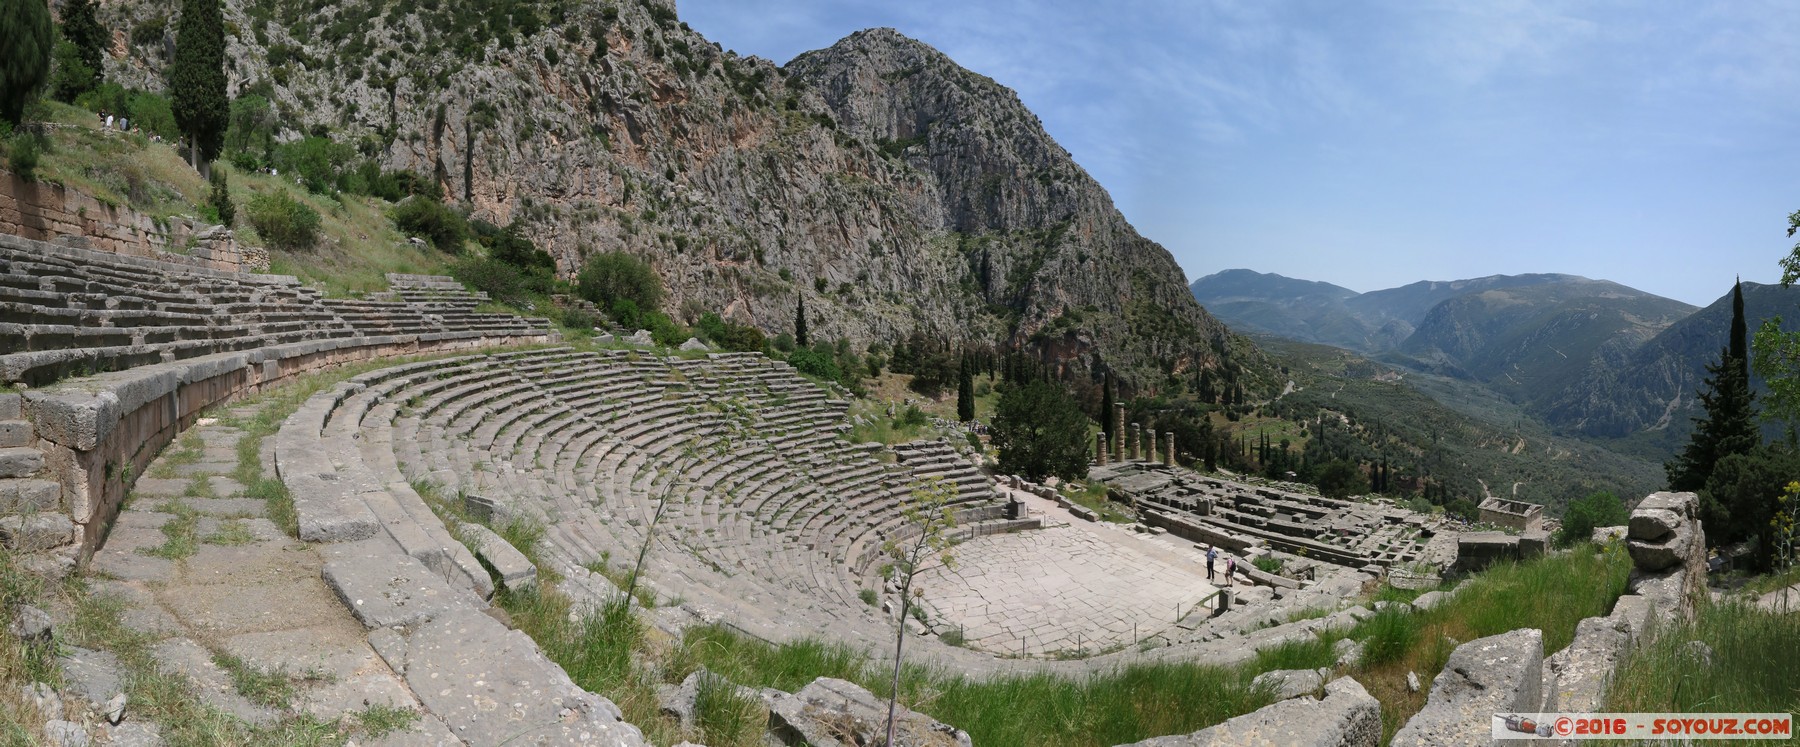 Archaeological site of Delphi - Ancient theatre - panorama
Mots-clés: Delfi Delphi GRC Grèce Delphes Ruines grec patrimoine unesco Phocis Montagne Ancient theatre panorama